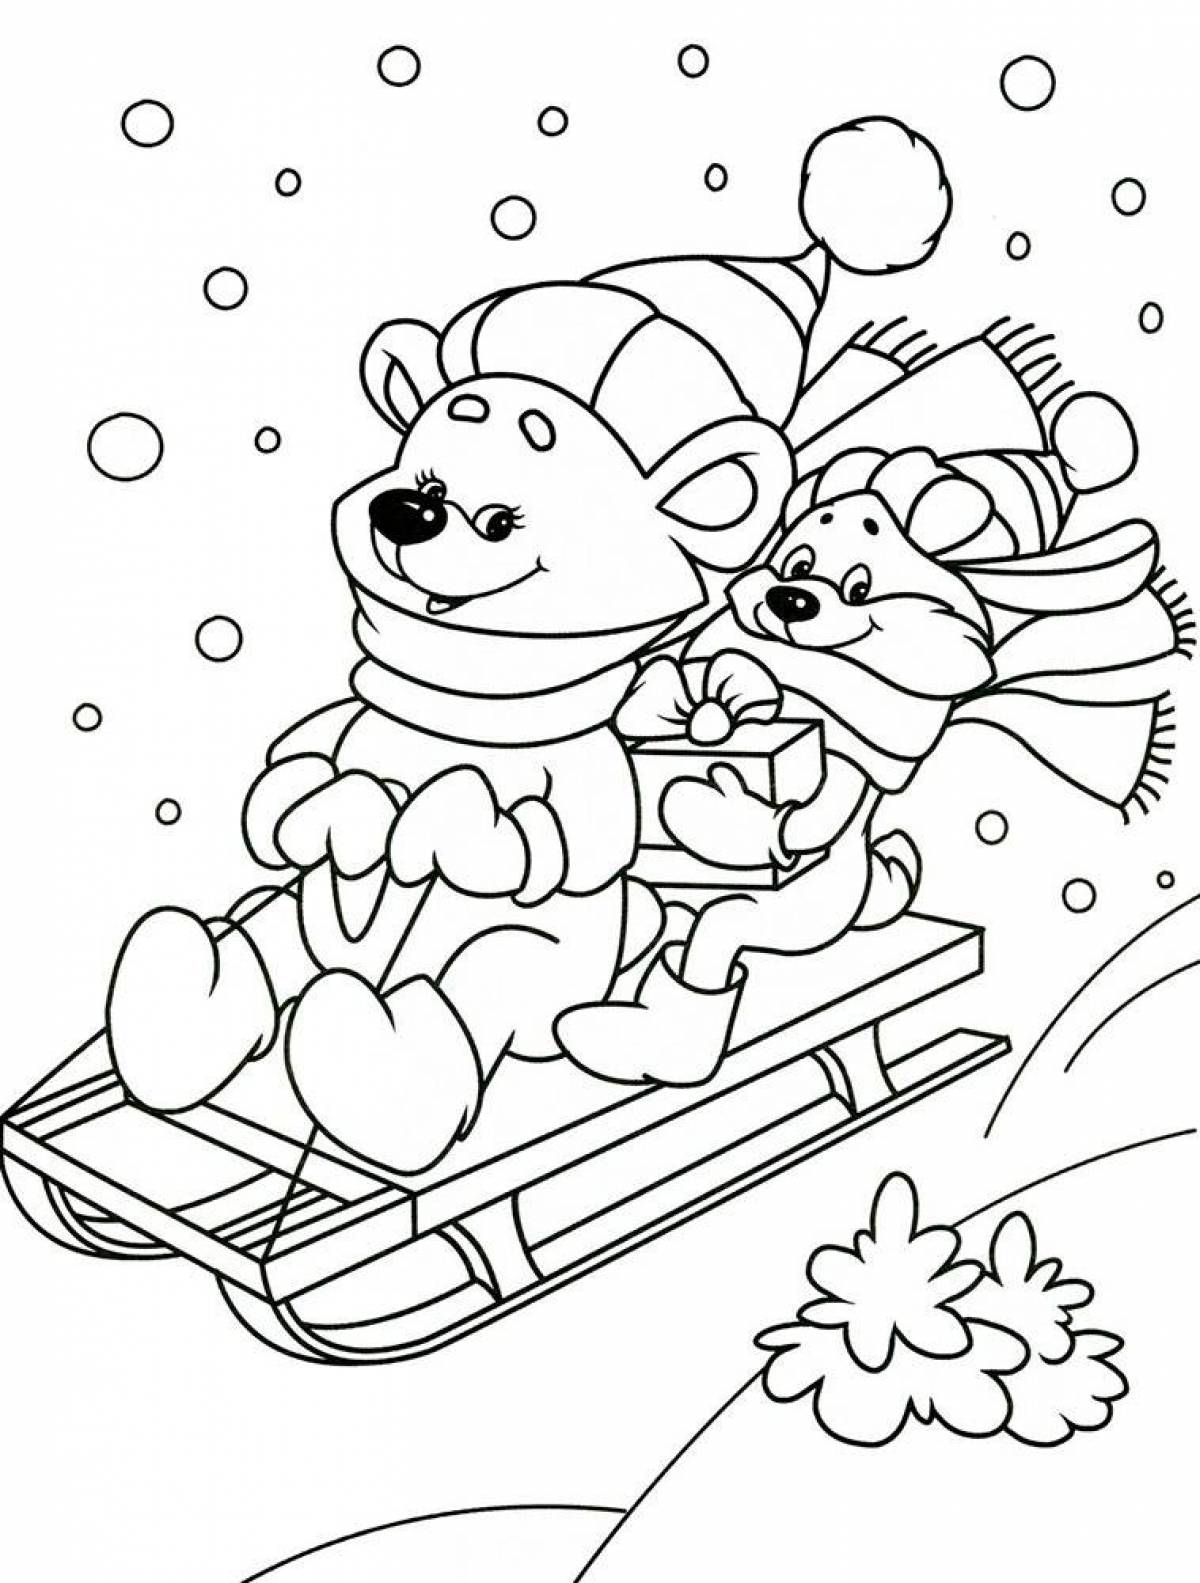 Веселая раскраска зима для детей 4-5 лет